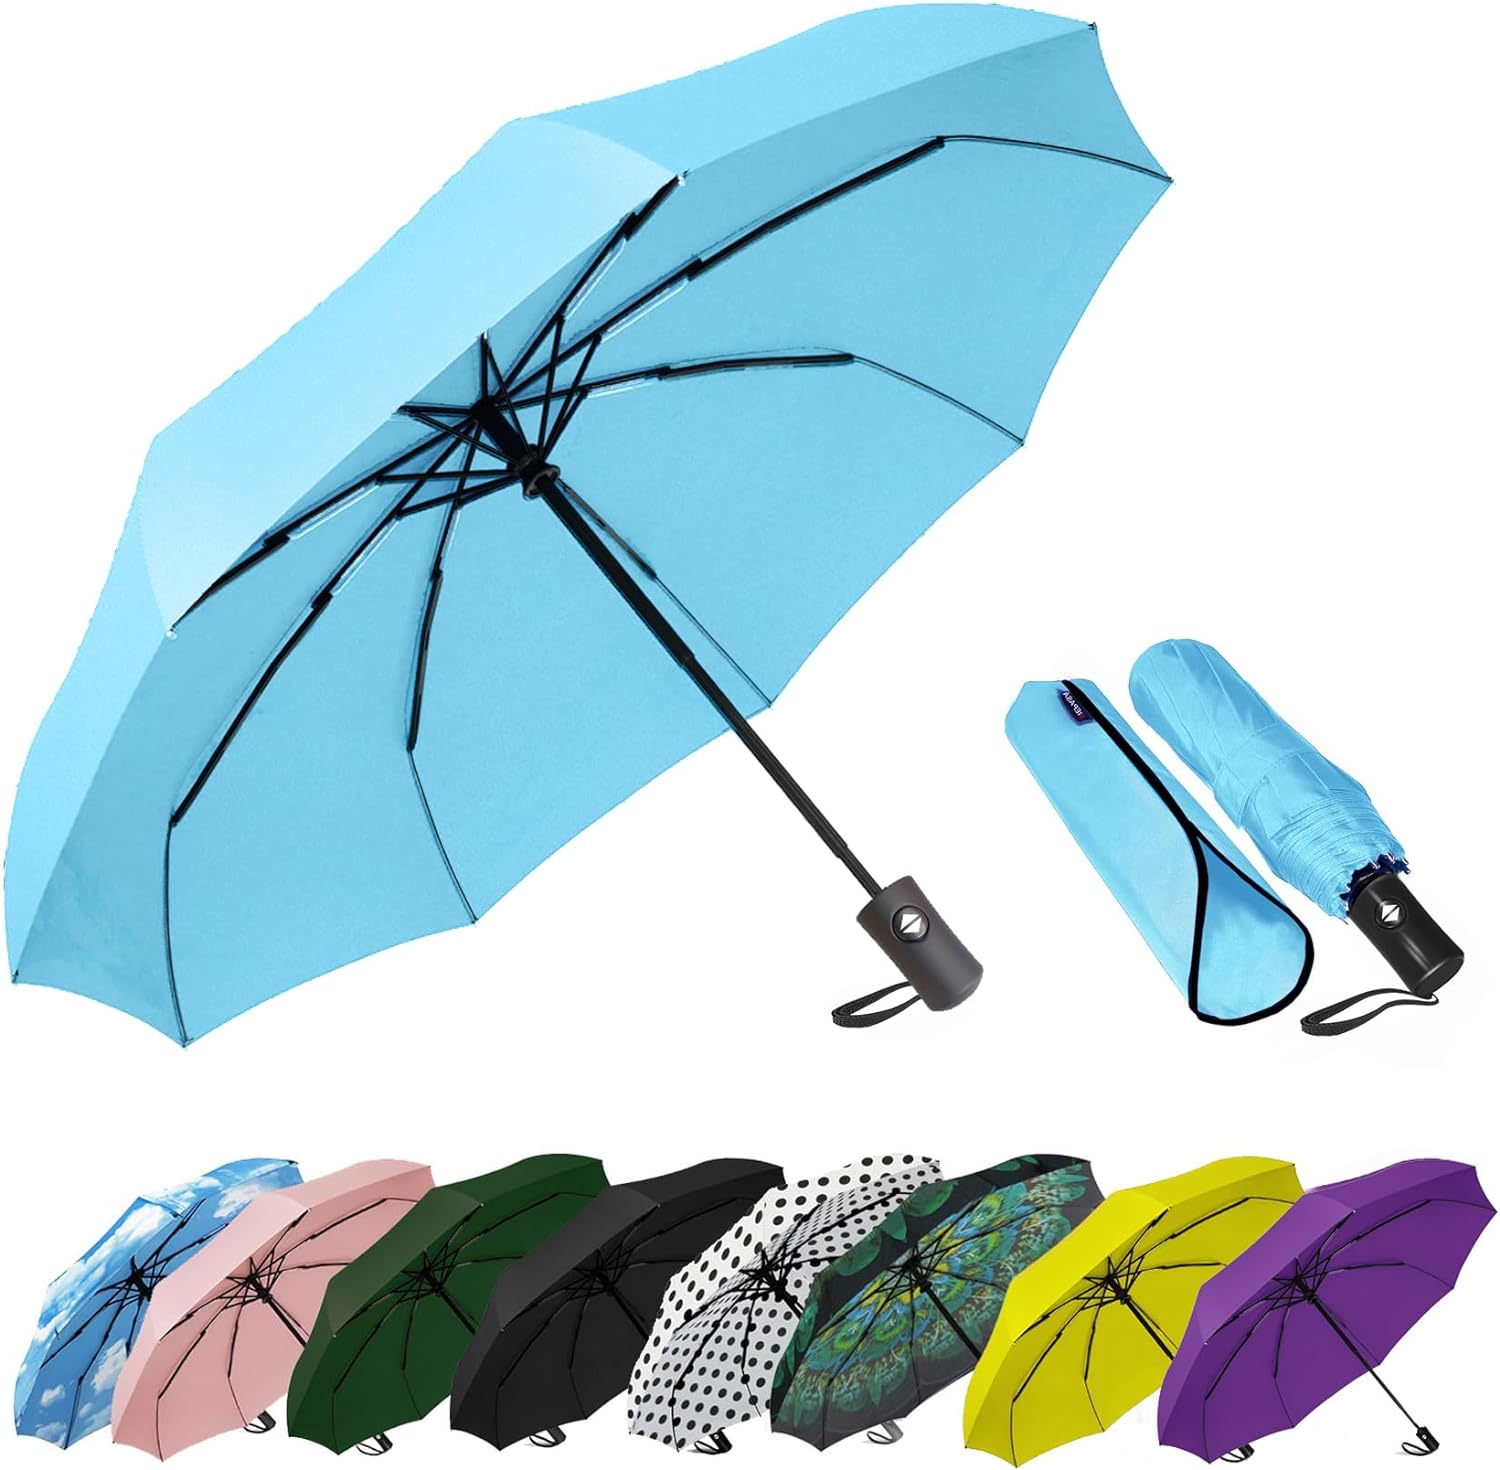 Different Umbrellas